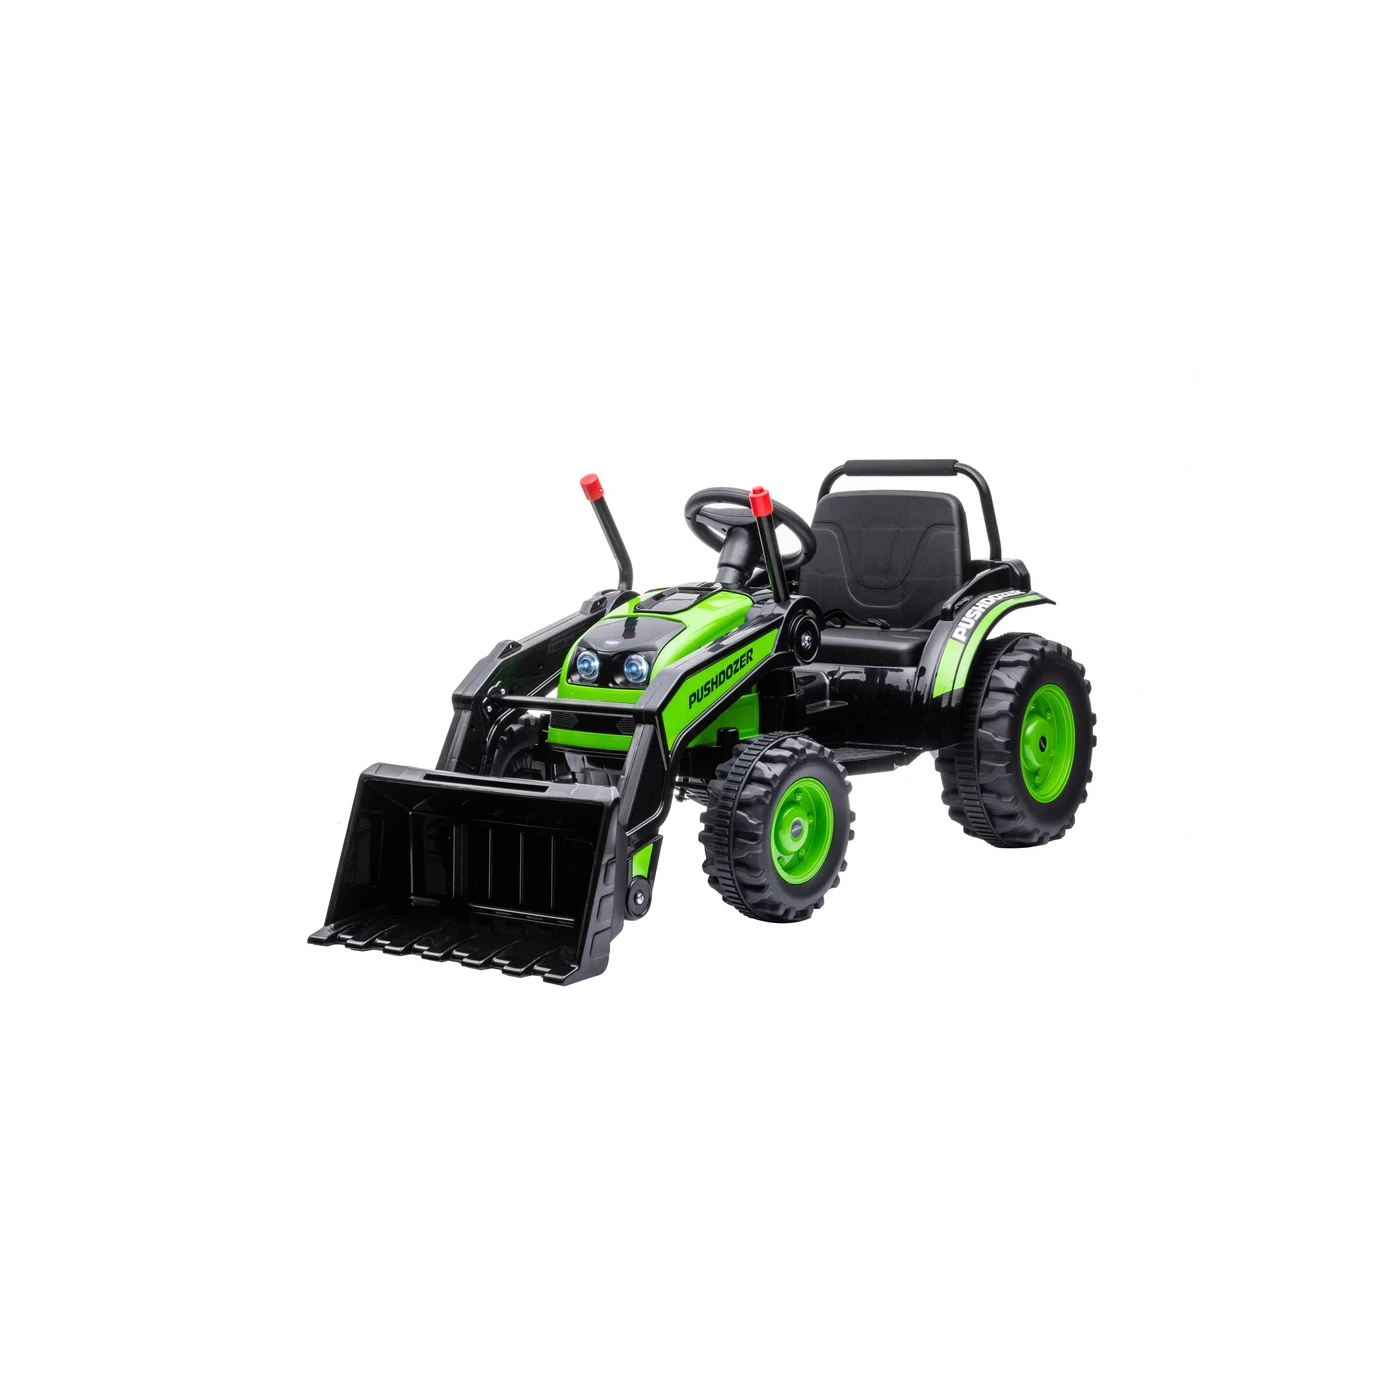 Toode asub Tartu laos!  Akutoitega traktor on täielik uudsus igale väikesele põllumehele! Väga realistlik sõiduk rahuldab iga väikese juhi. The post Traktor laa